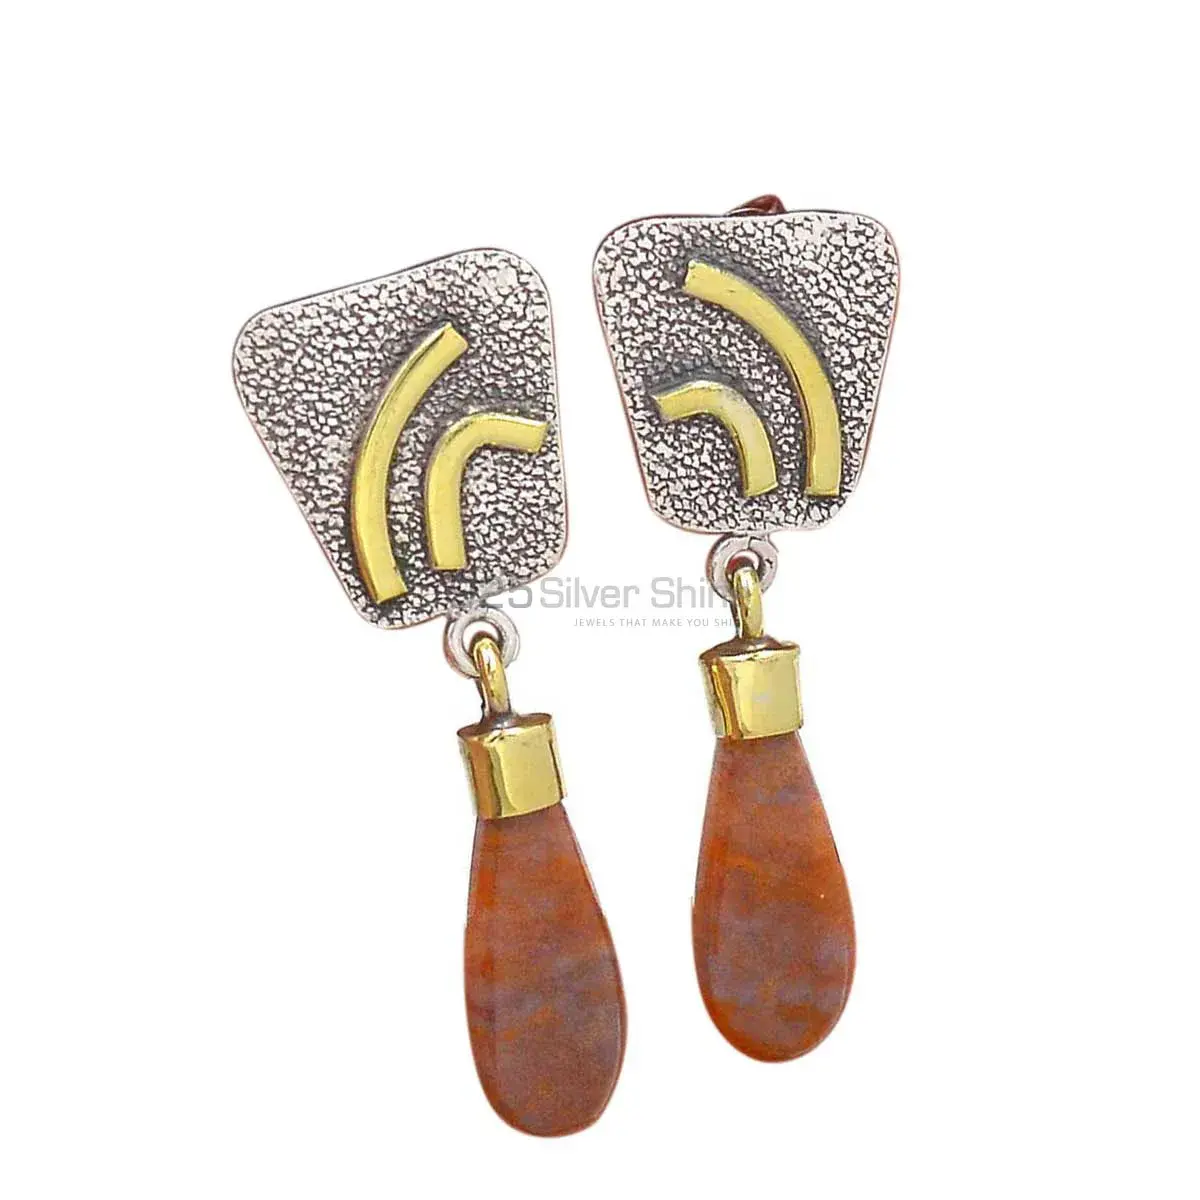 Genuine Honey Aragonite Gemstone Earrings Suppliers In 925 Sterling Silver Jewelry 925SE2765